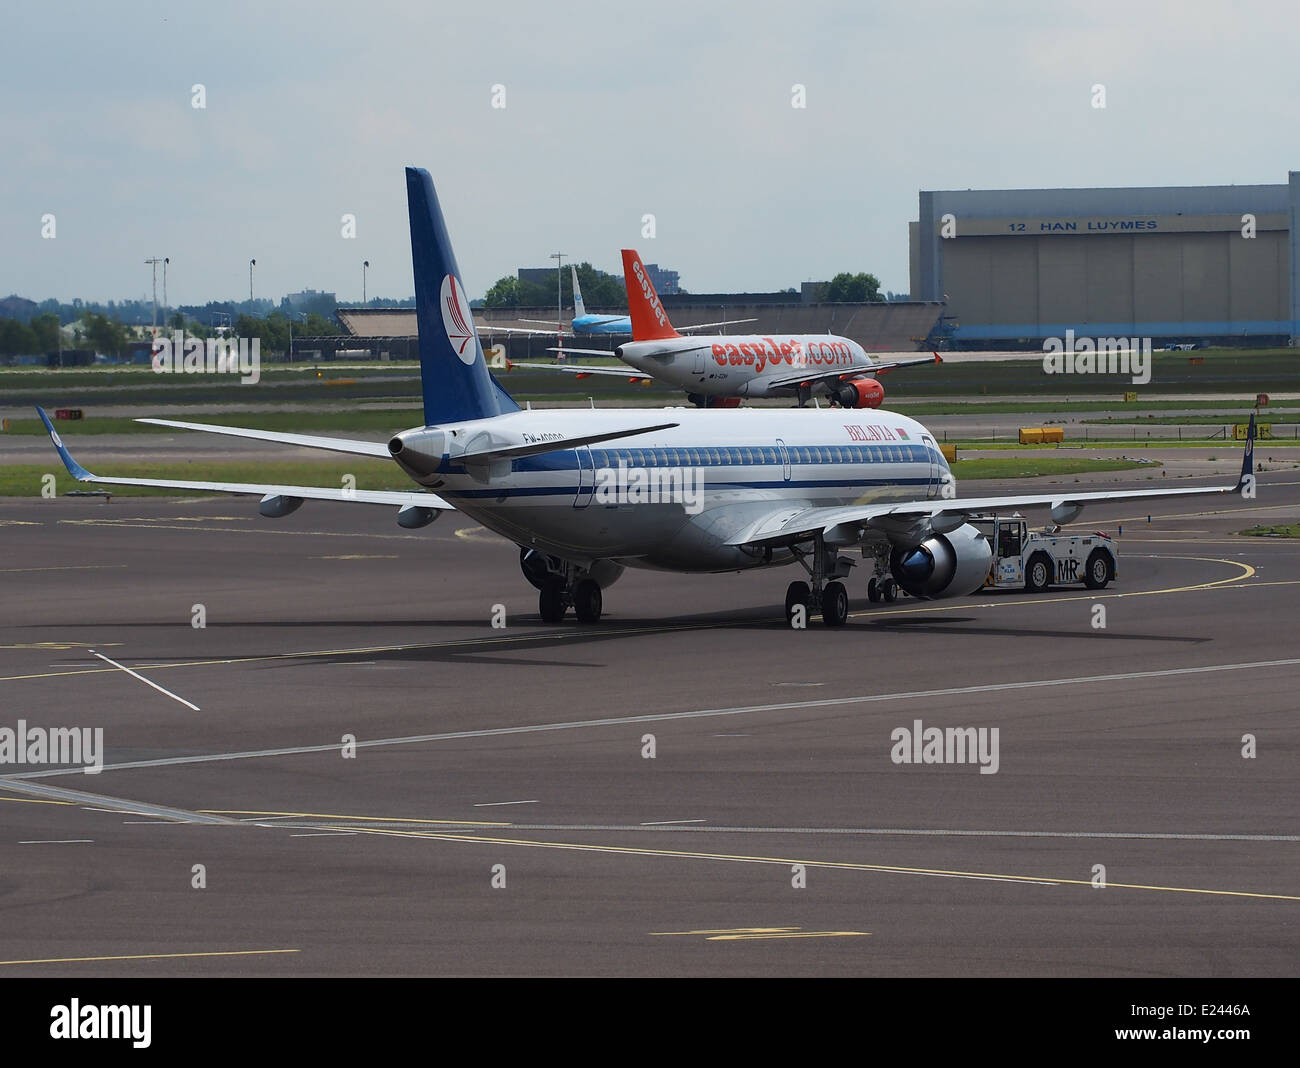 EW-400PO Belavia Embraer 195, die Rollen auf dem Flughafen Schiphol (AMS - EHAM), den Niederlanden, 24. Mai 2014, Pic-3 Stockfoto